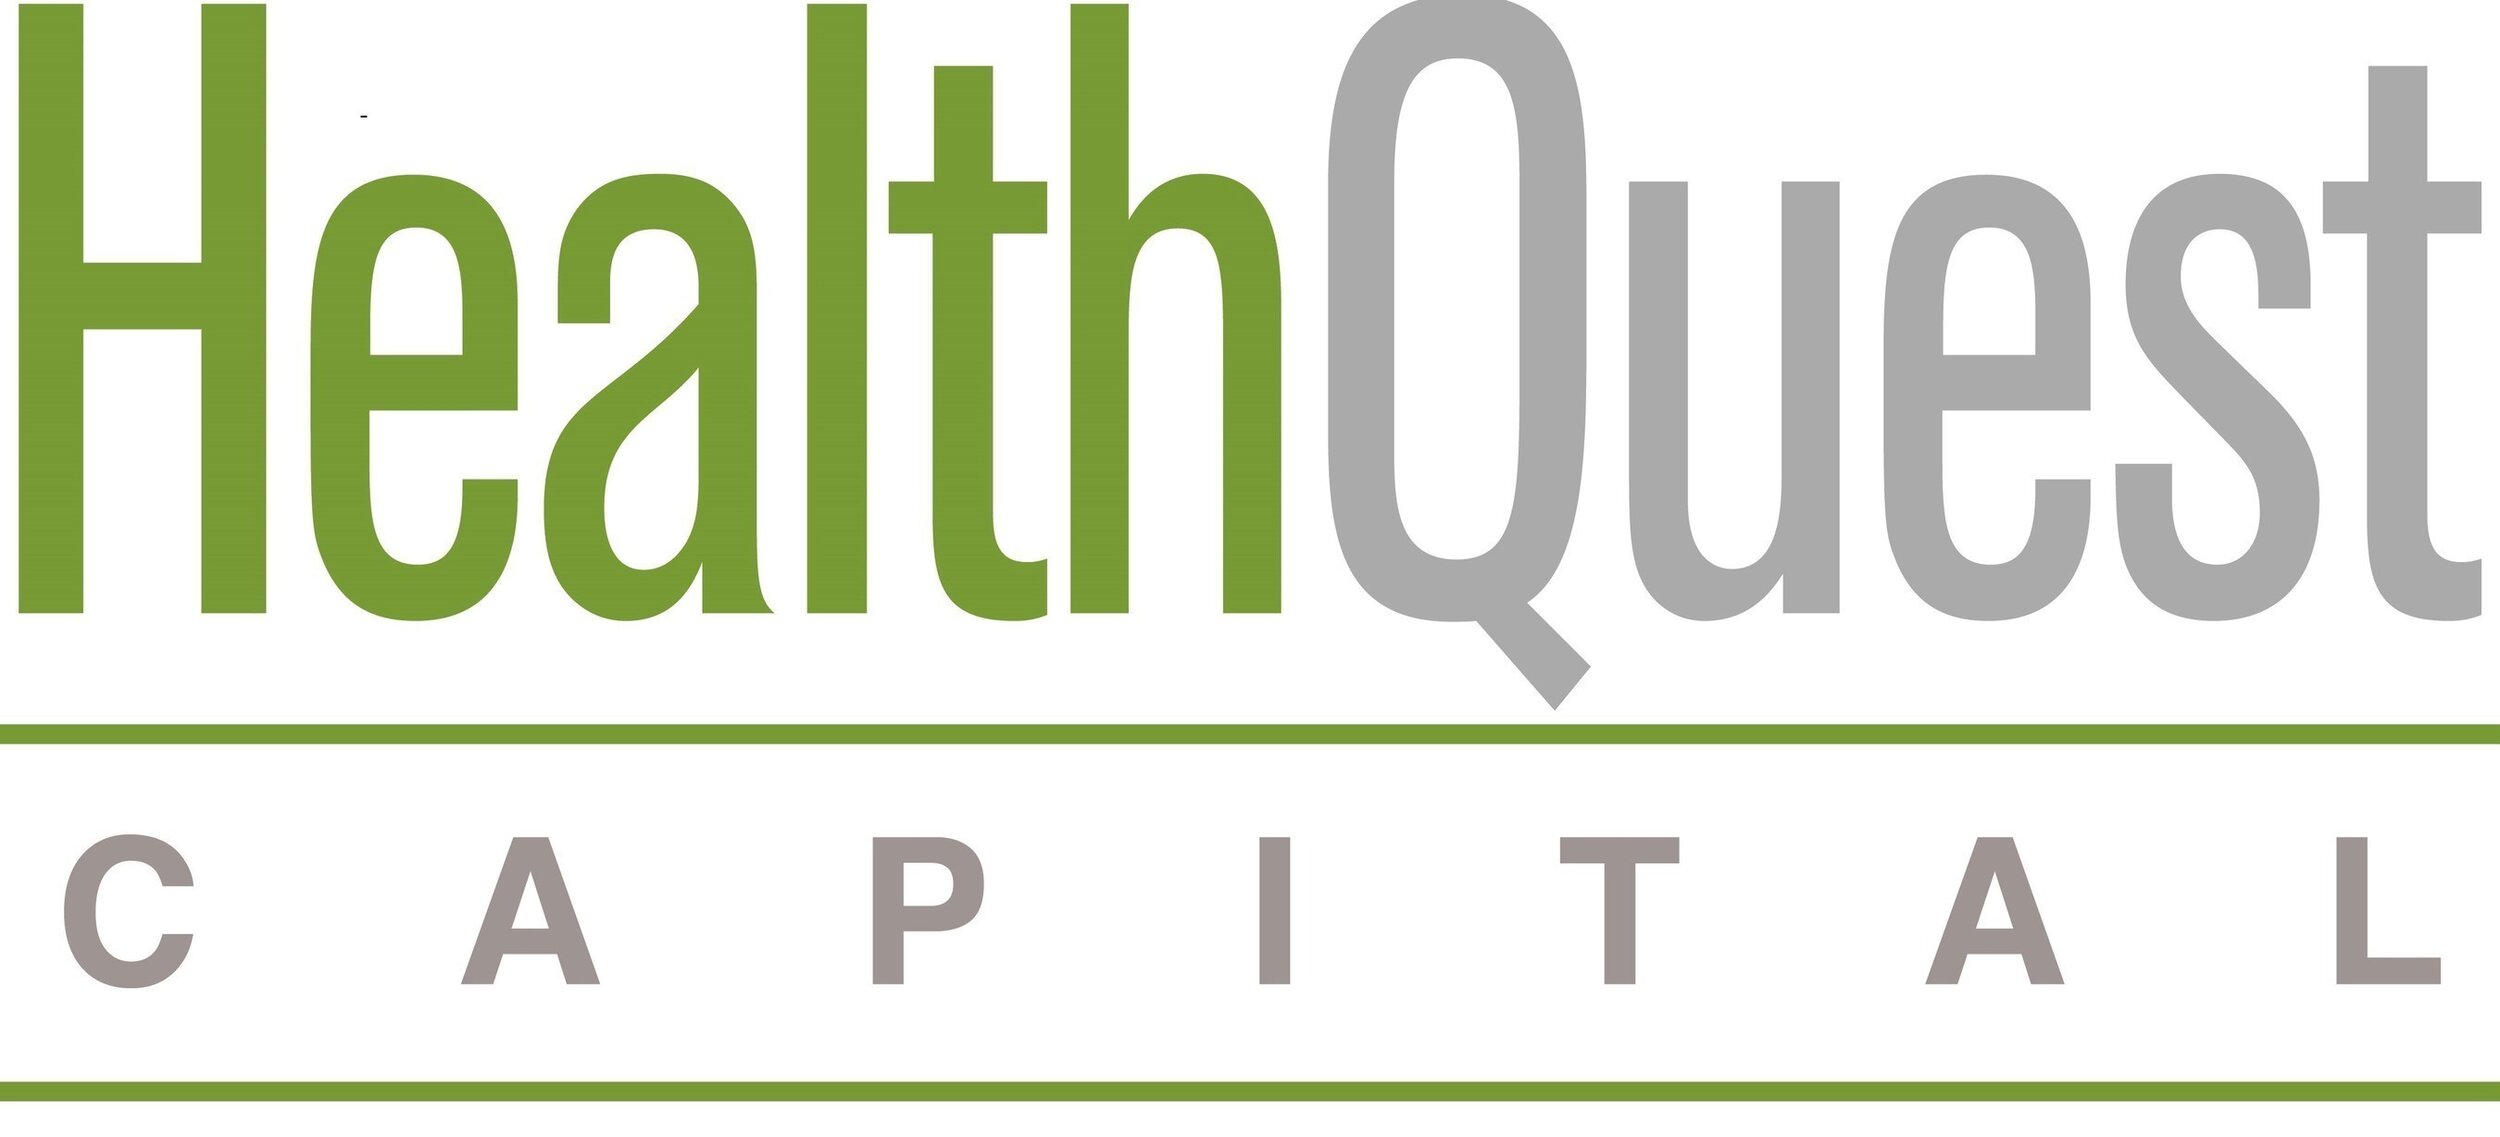 Healthquest logo.jpg